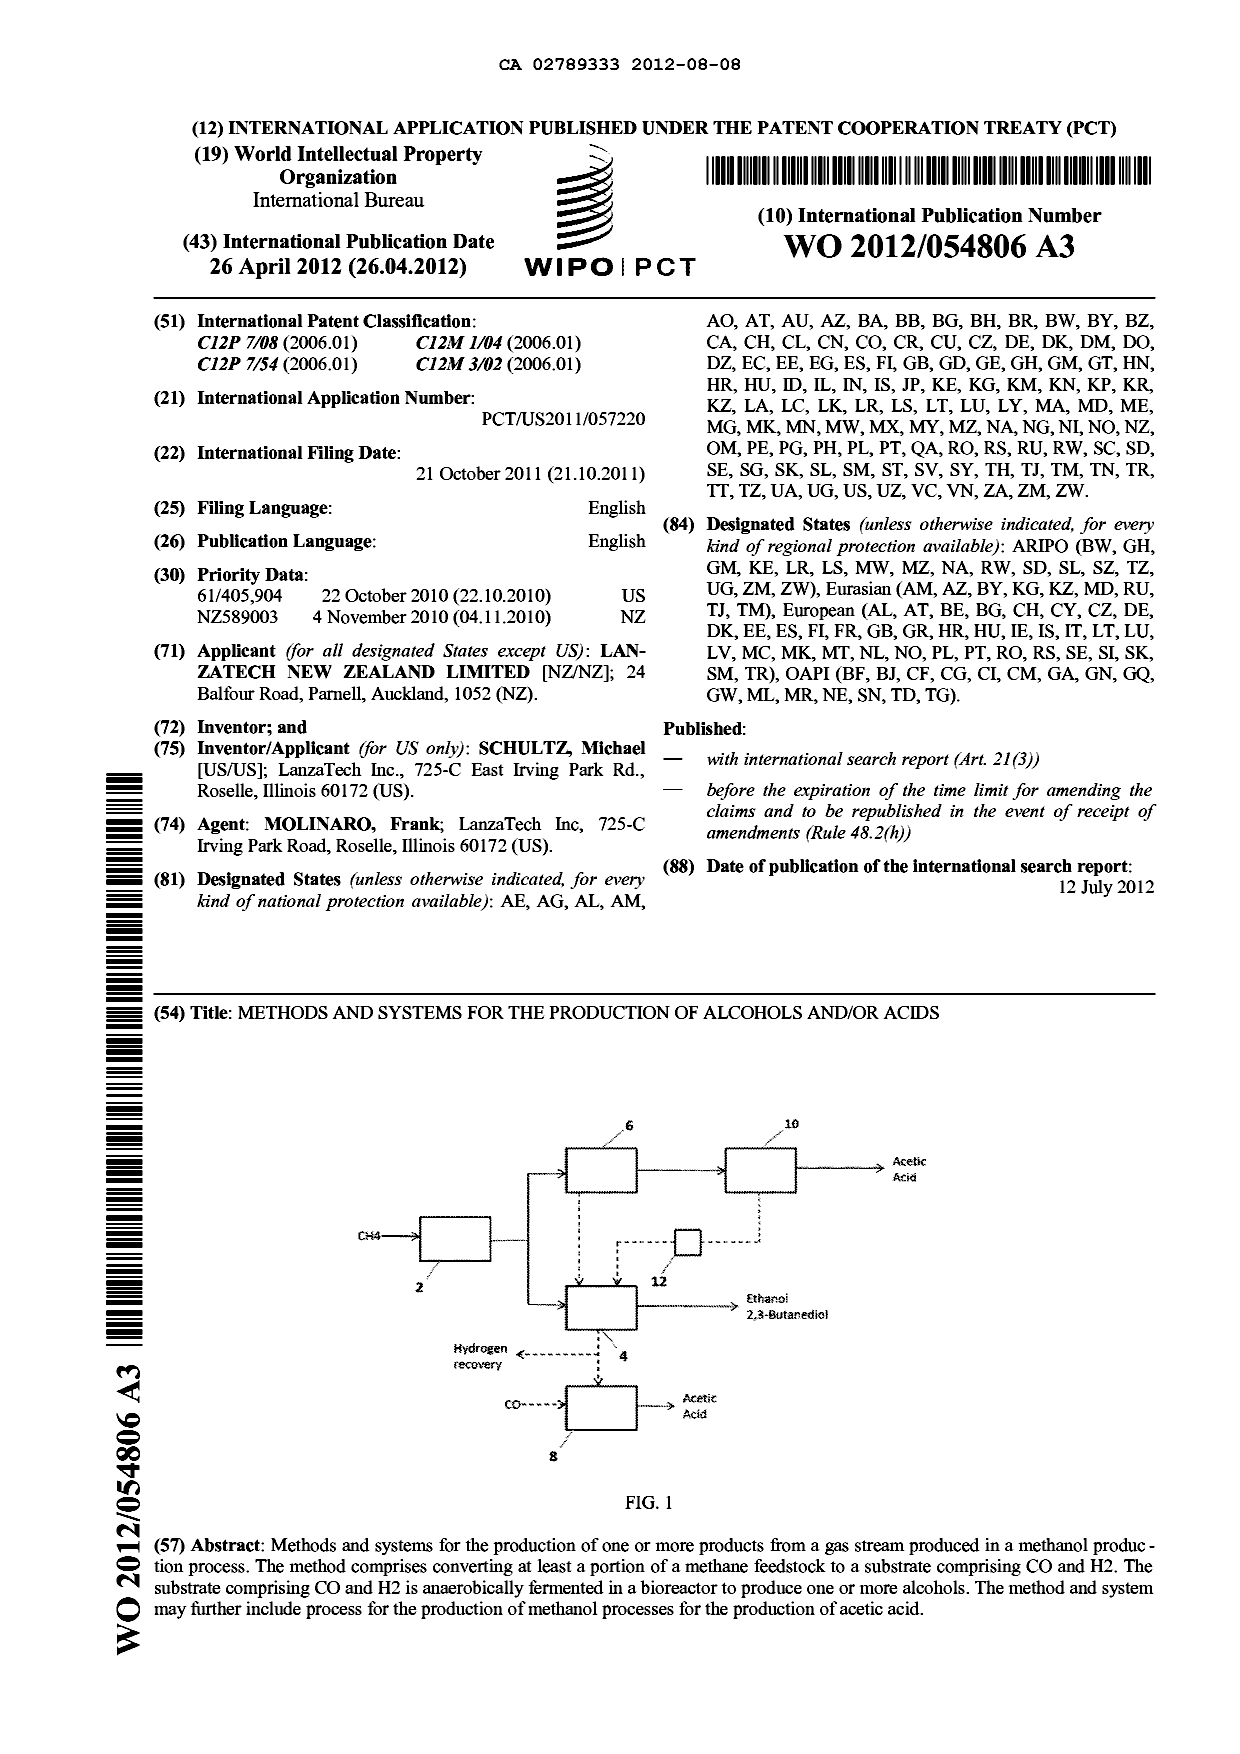 Document de brevet canadien 2789333. Abrégé 20120808. Image 1 de 1